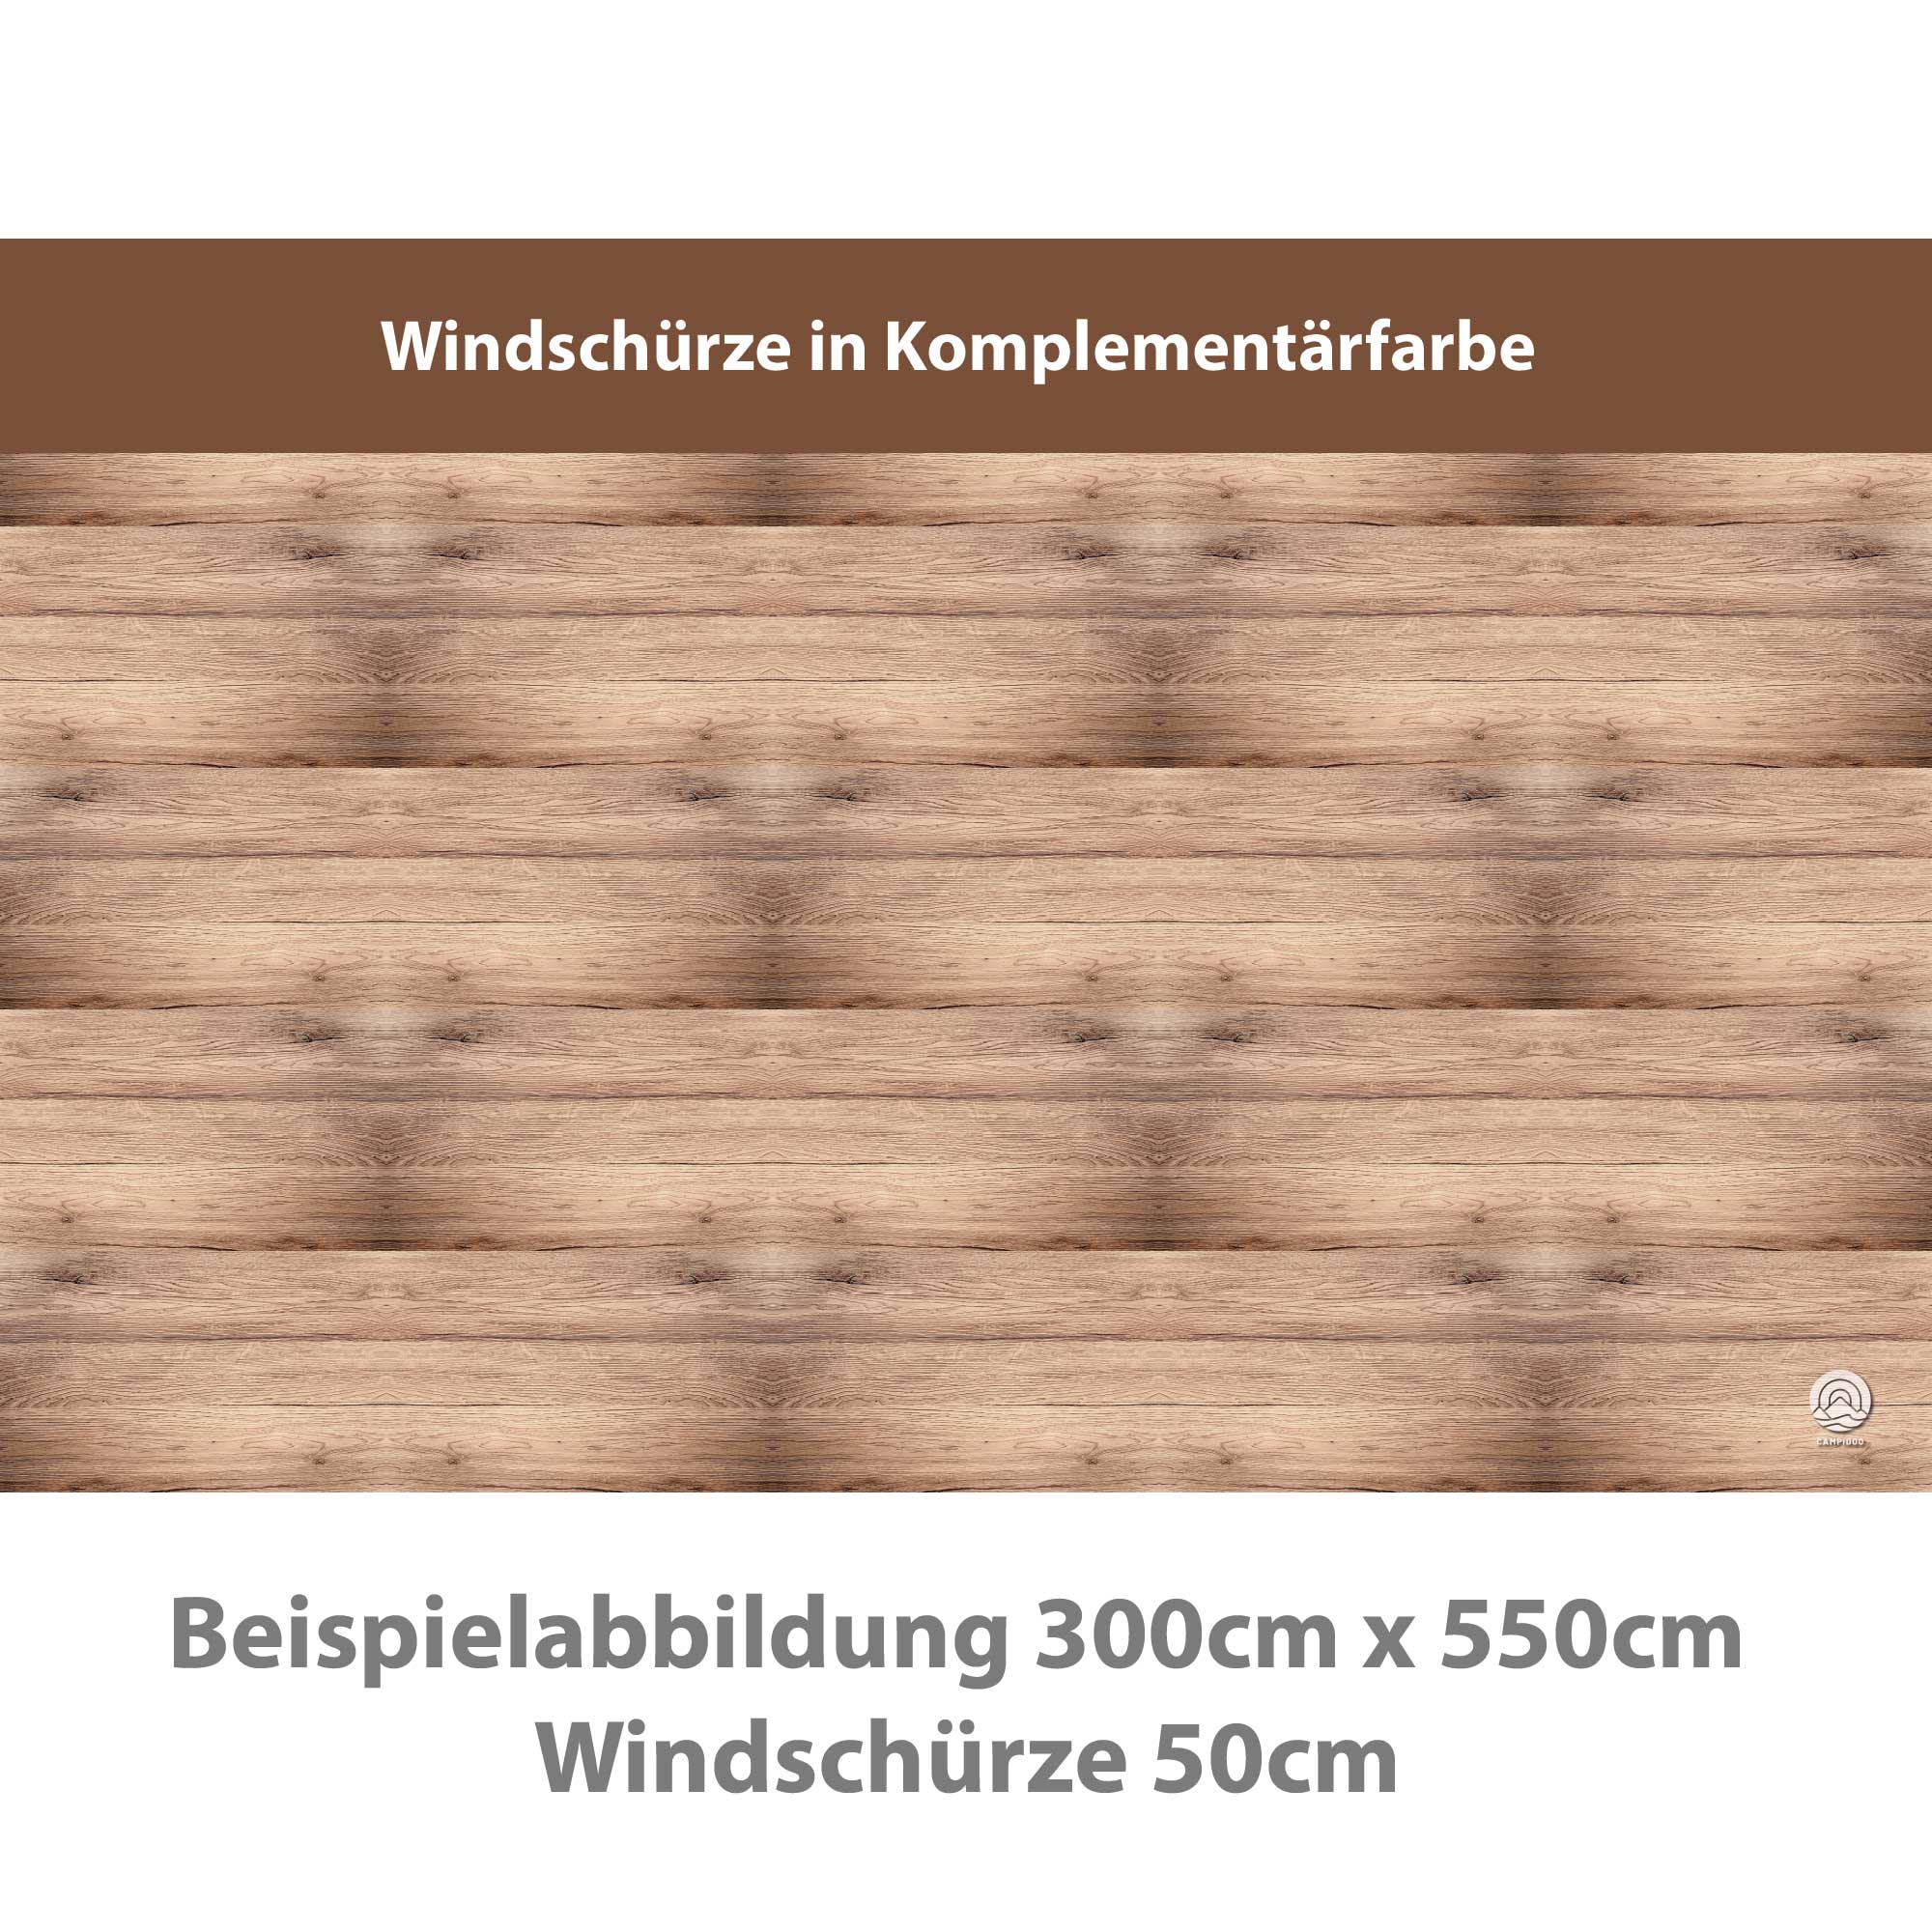 Premium Vorzeltteppich mit abnehmbarer Windschürze - HOLZDECK - 3,0m x 5,4m - Abverkauf